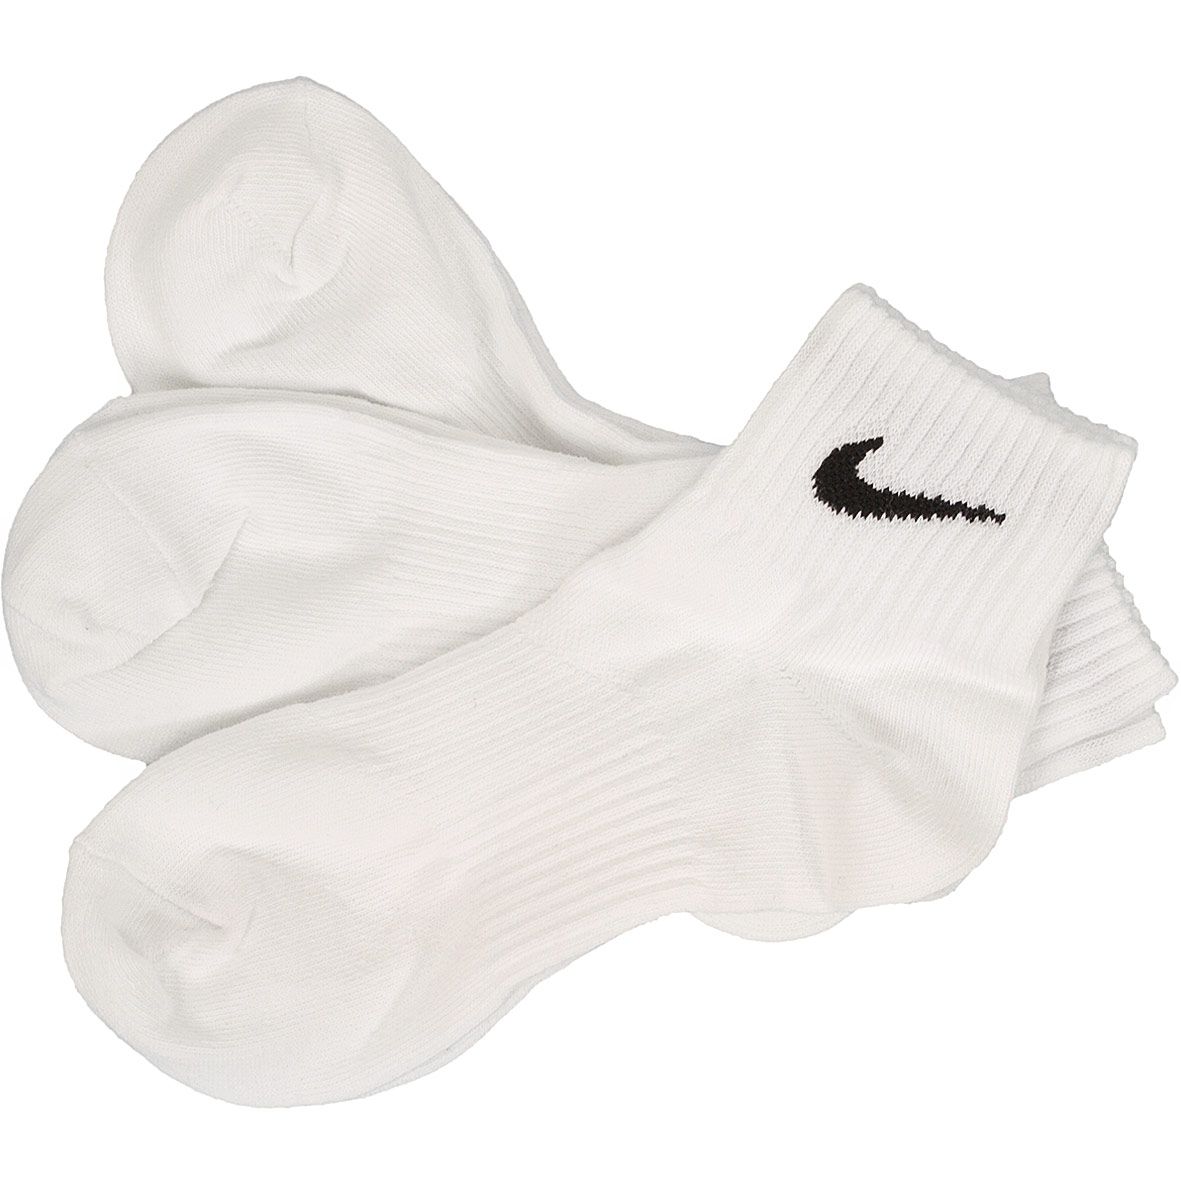 ☆ Nike Socken Lightweight Quarter weiß/schwarz - hier bestellen!